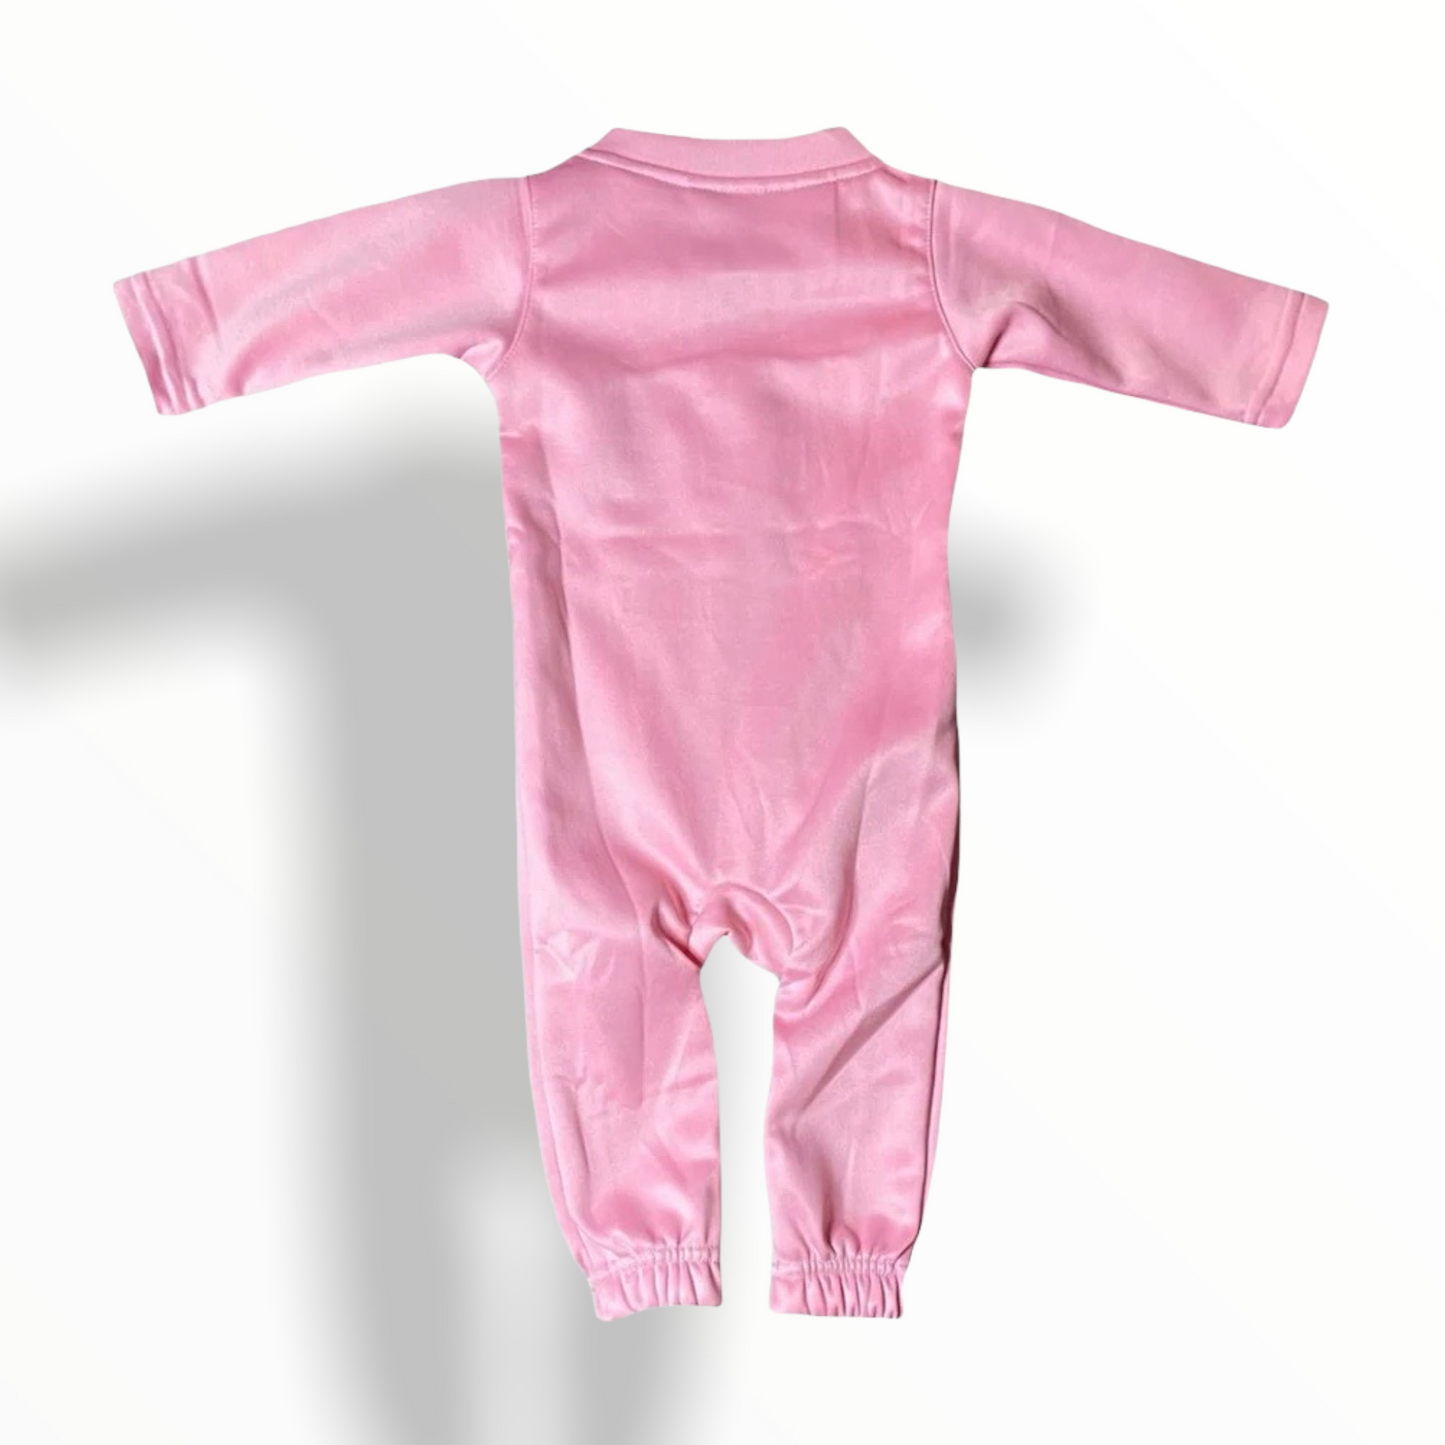 Baby Winners Onesies - Pink